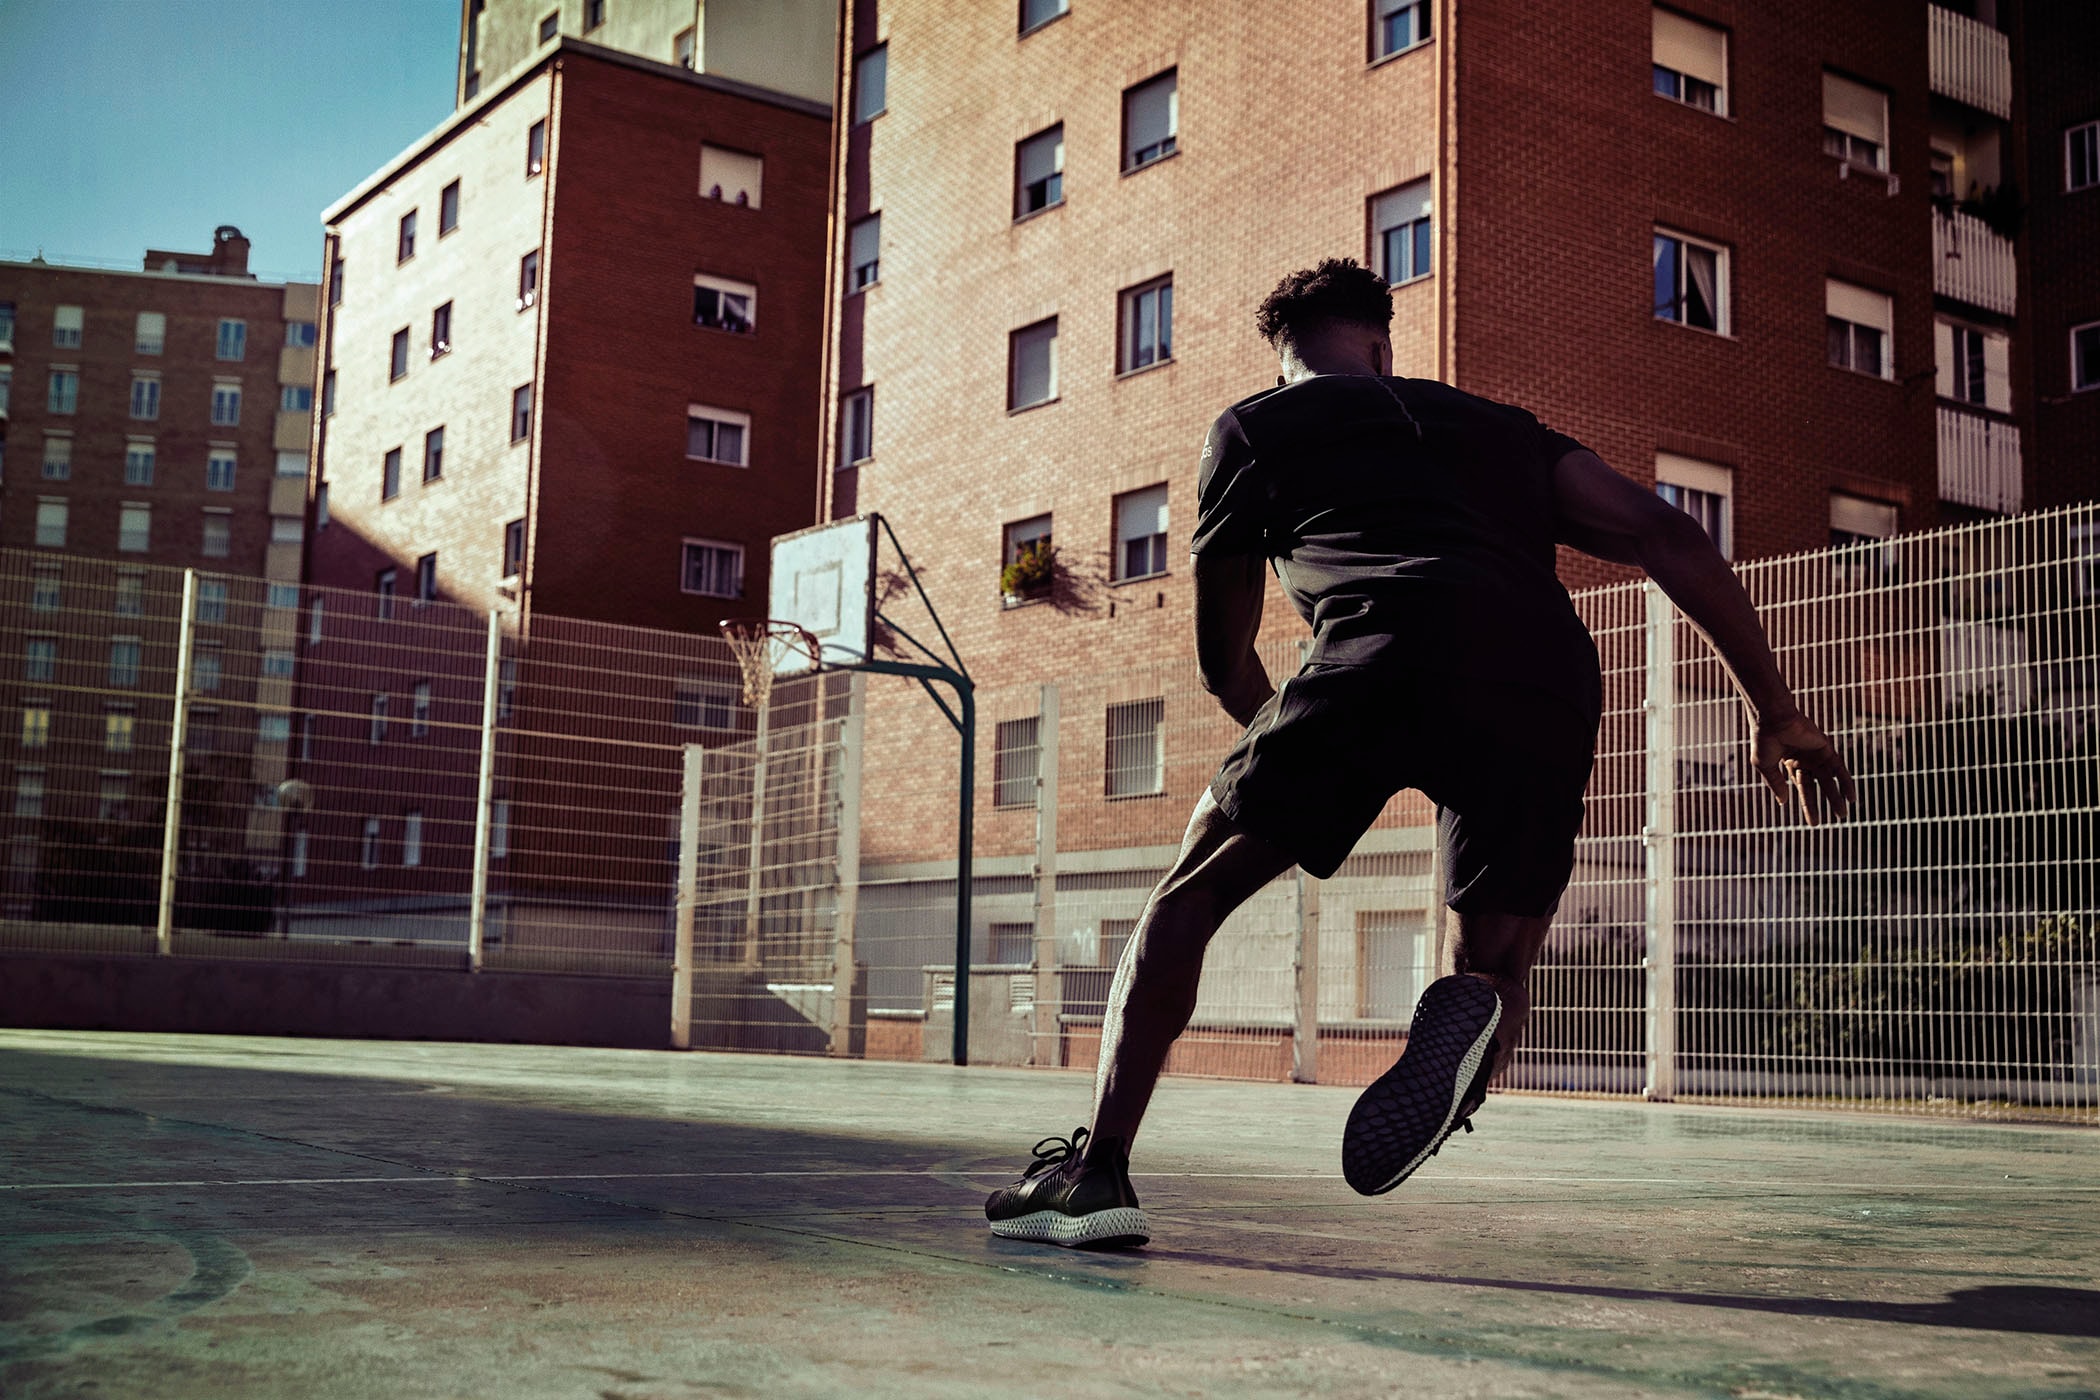 為顛覆而生！adidas 全新科技跑鞋 ALPHAEDGE 4D 正式登場